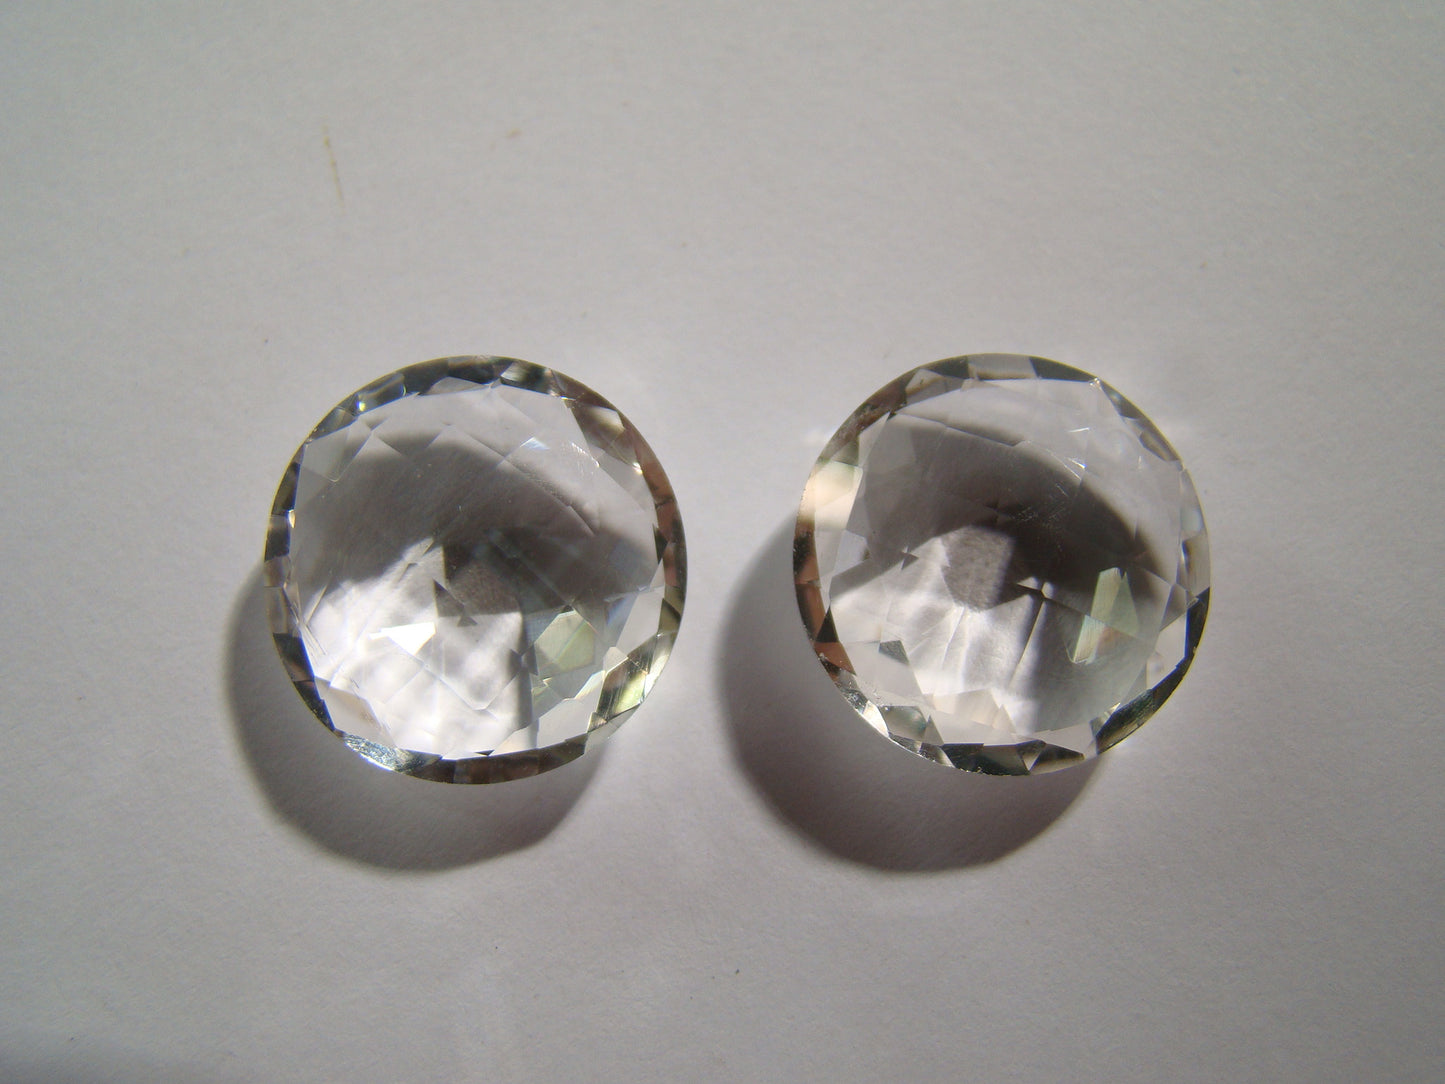 30.19ct Quartz (Crystal) Pair